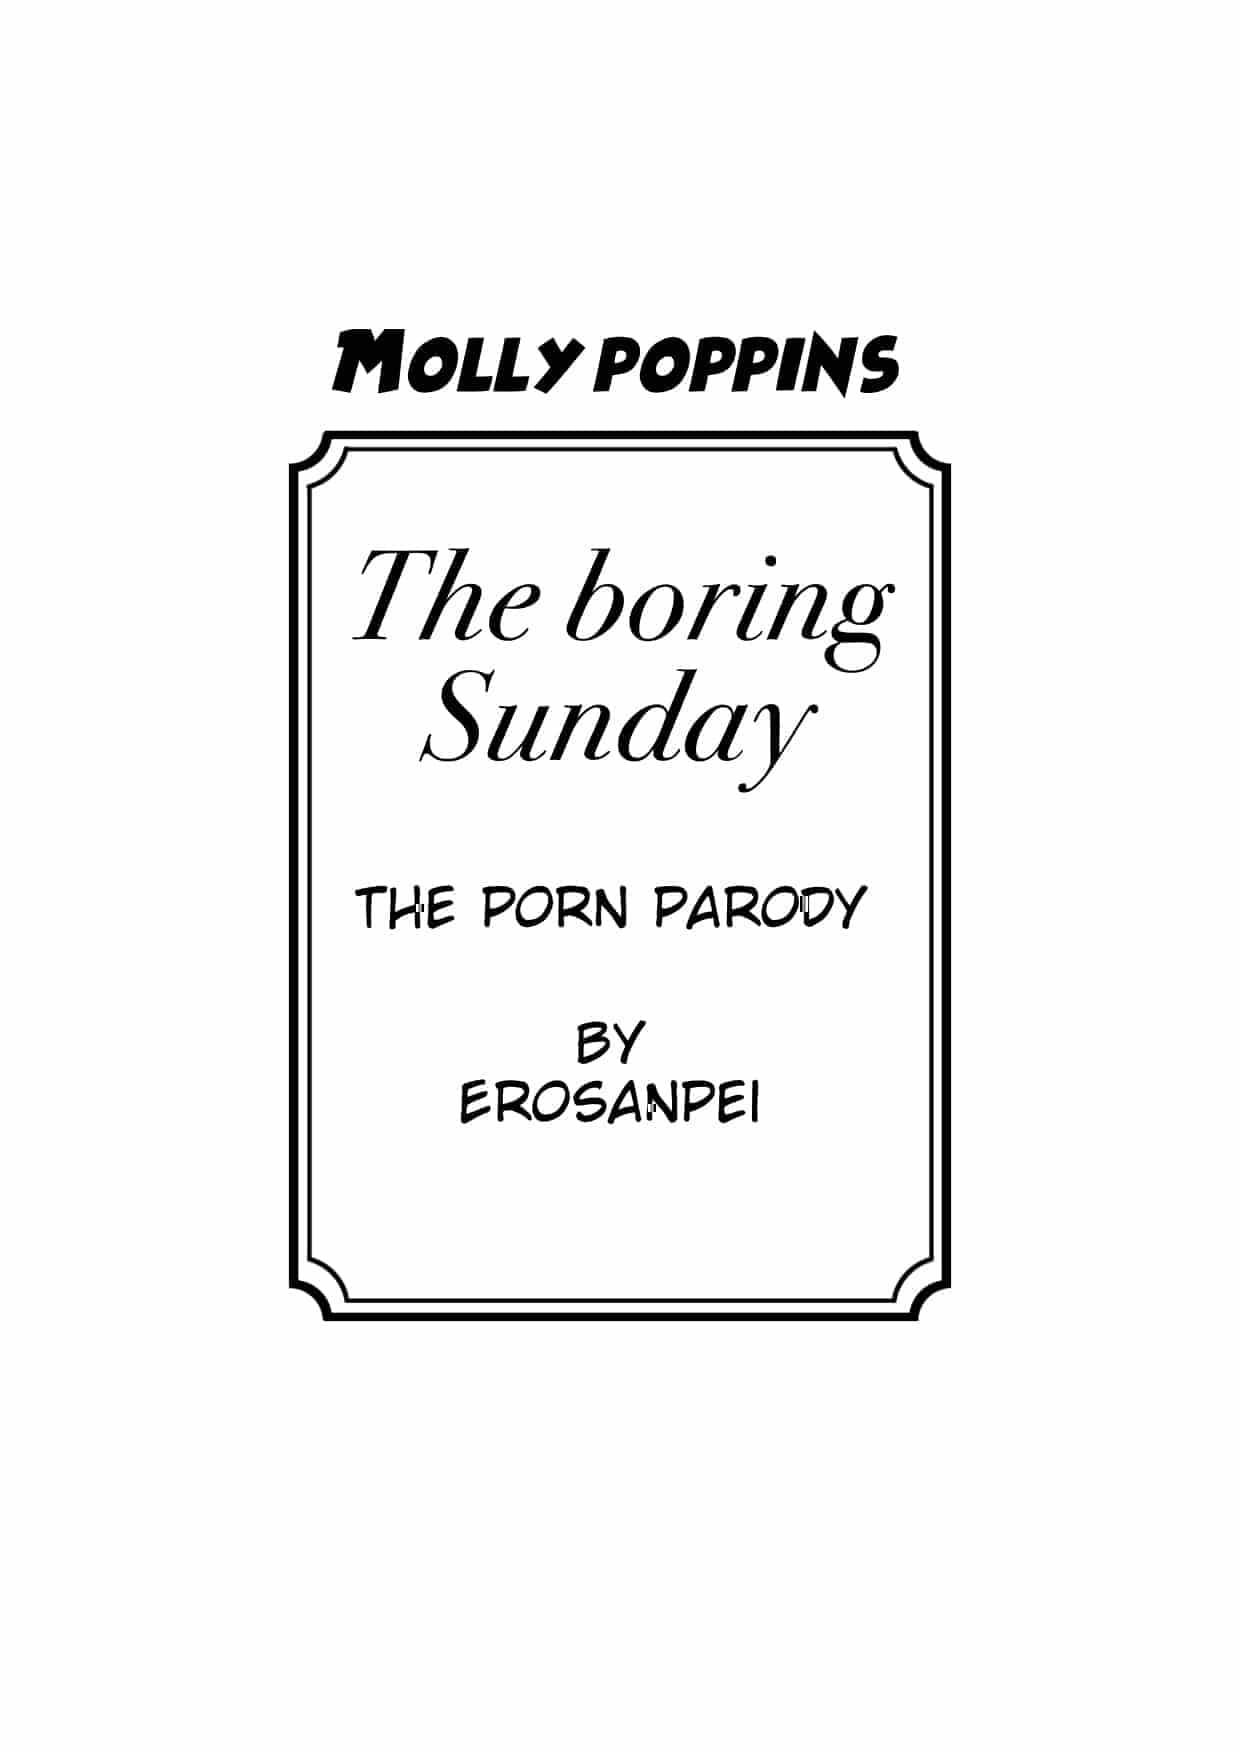 Molly Poppins – Boring Sunday - 6b0f0ad311703fbbb4f7026b8ec5195c